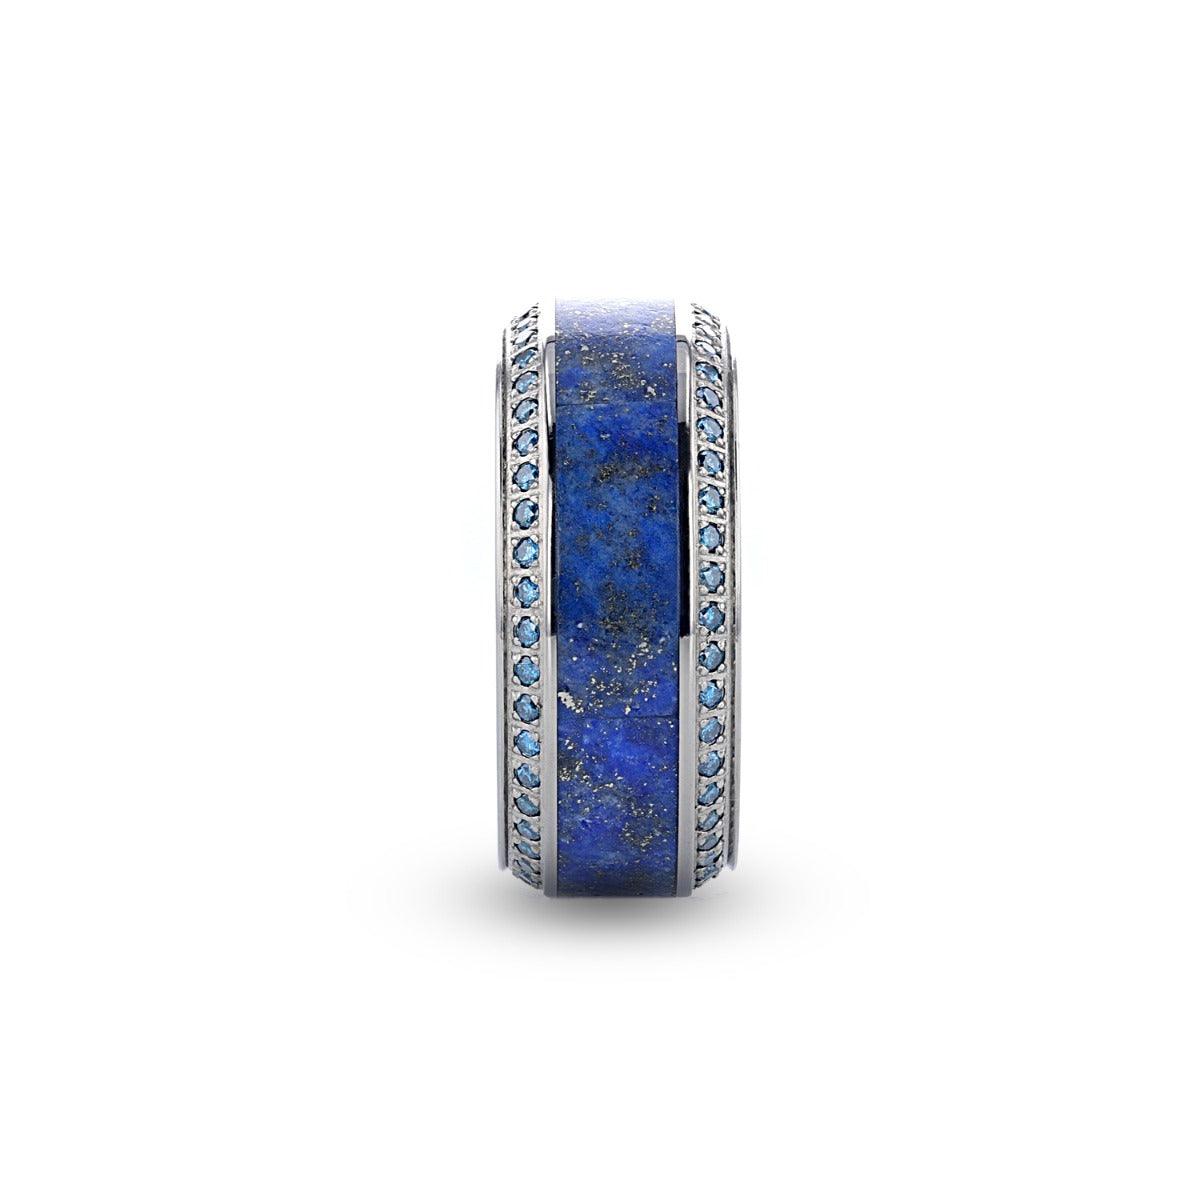 HYDRA - Lapis Lazuli Inlaid Titanium Wedding Ring Polished Beveled Edges Set with Round Blue Diamonds - 10mm - The Rutile Ltd